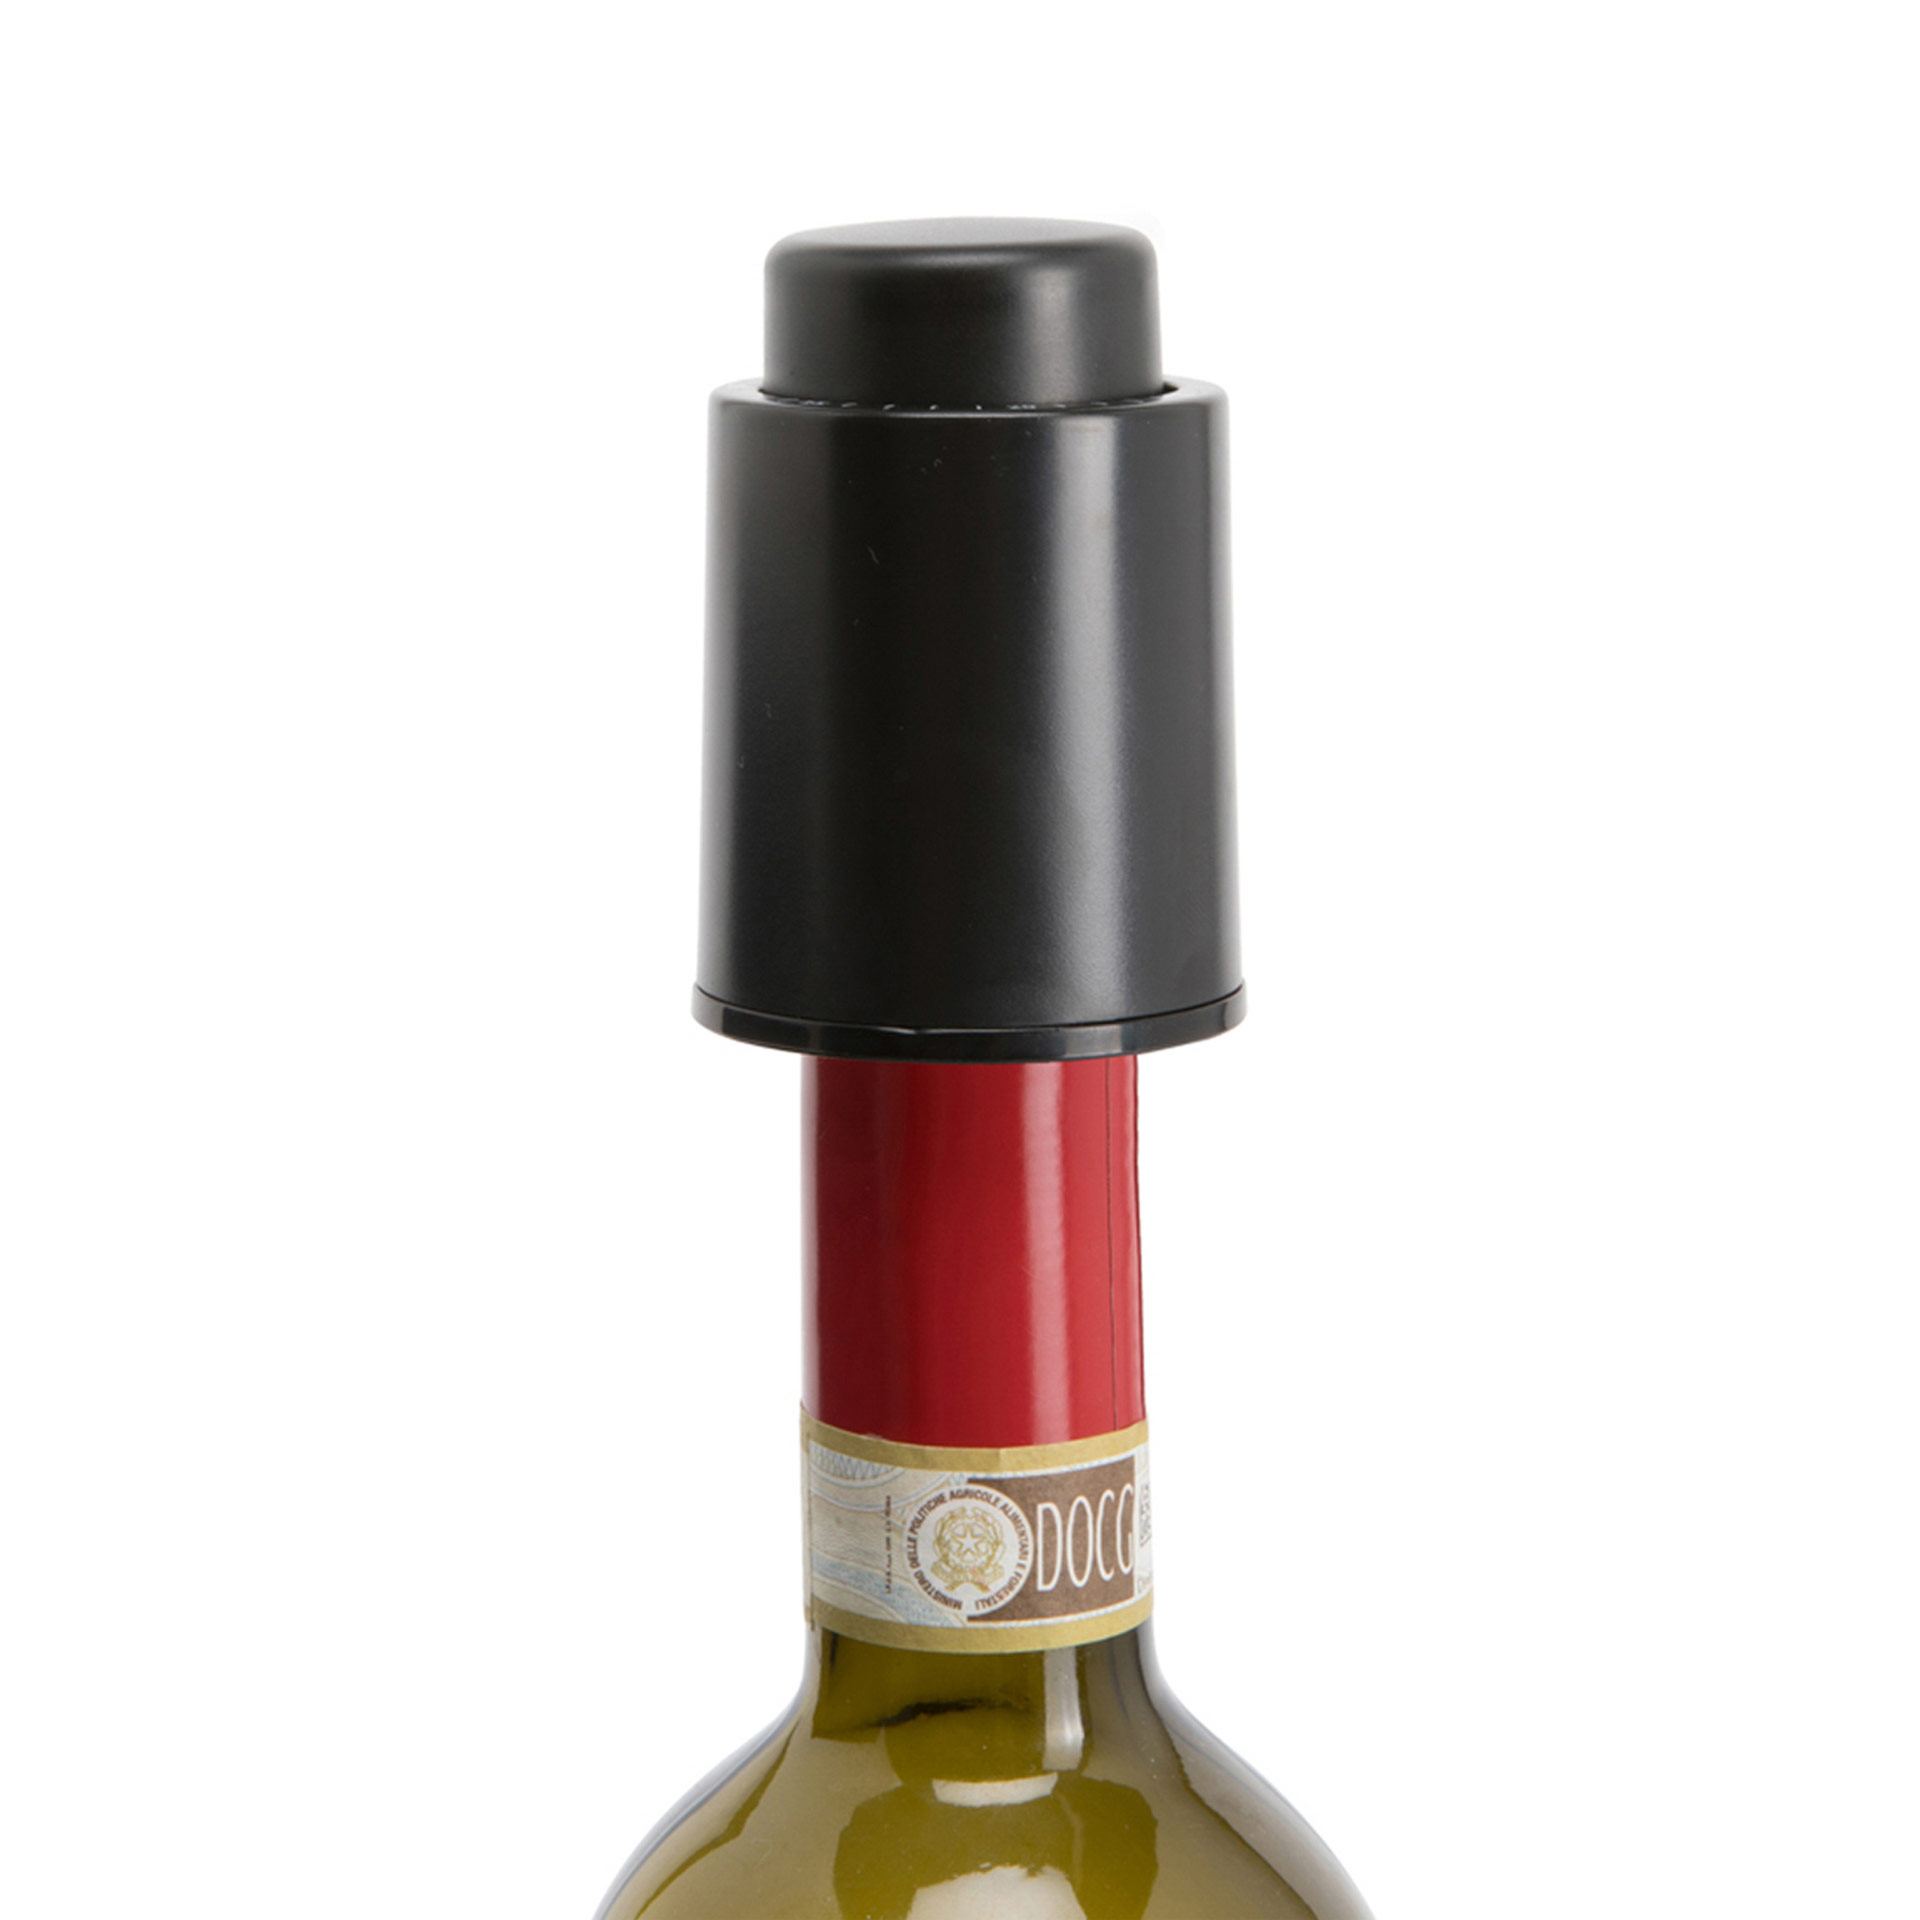 SEVERIN ZB3624 Tappi per bottiglie di vino X 2 - consente la chiusura  sottovuoto per preservare l